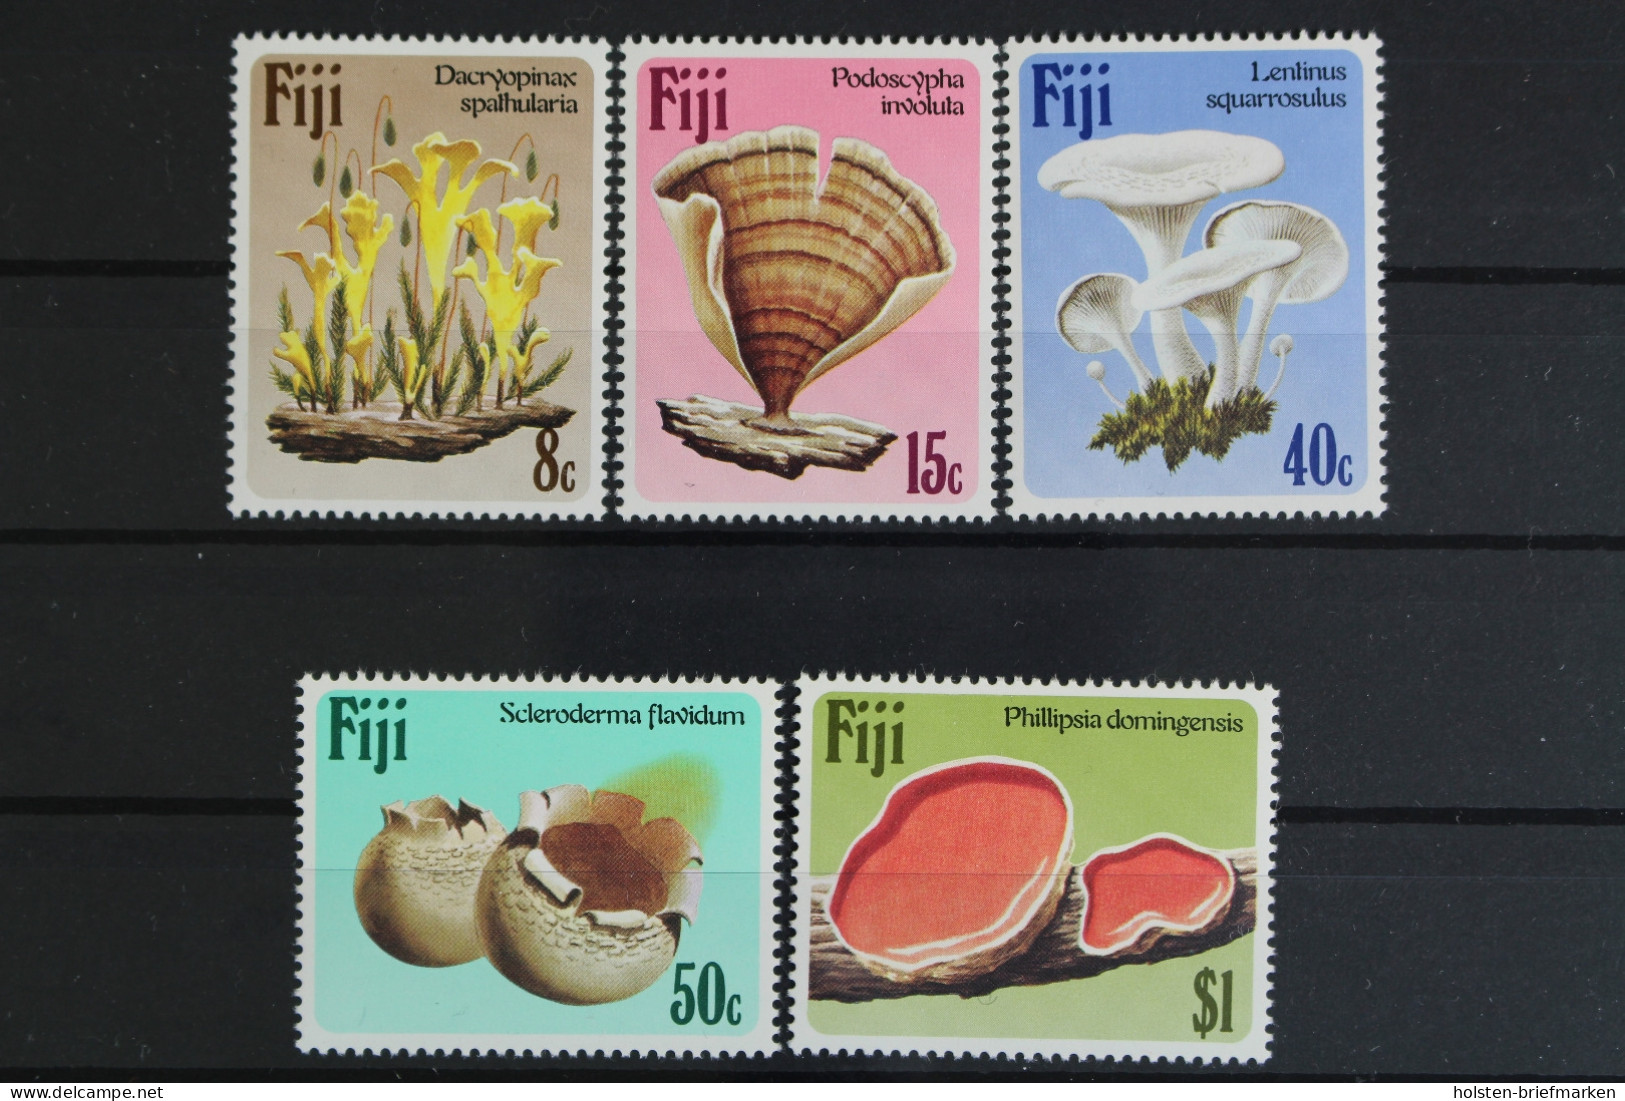 Fidschi - Inseln, MiNr. 494-498, Postfrisch - Fiji (1970-...)